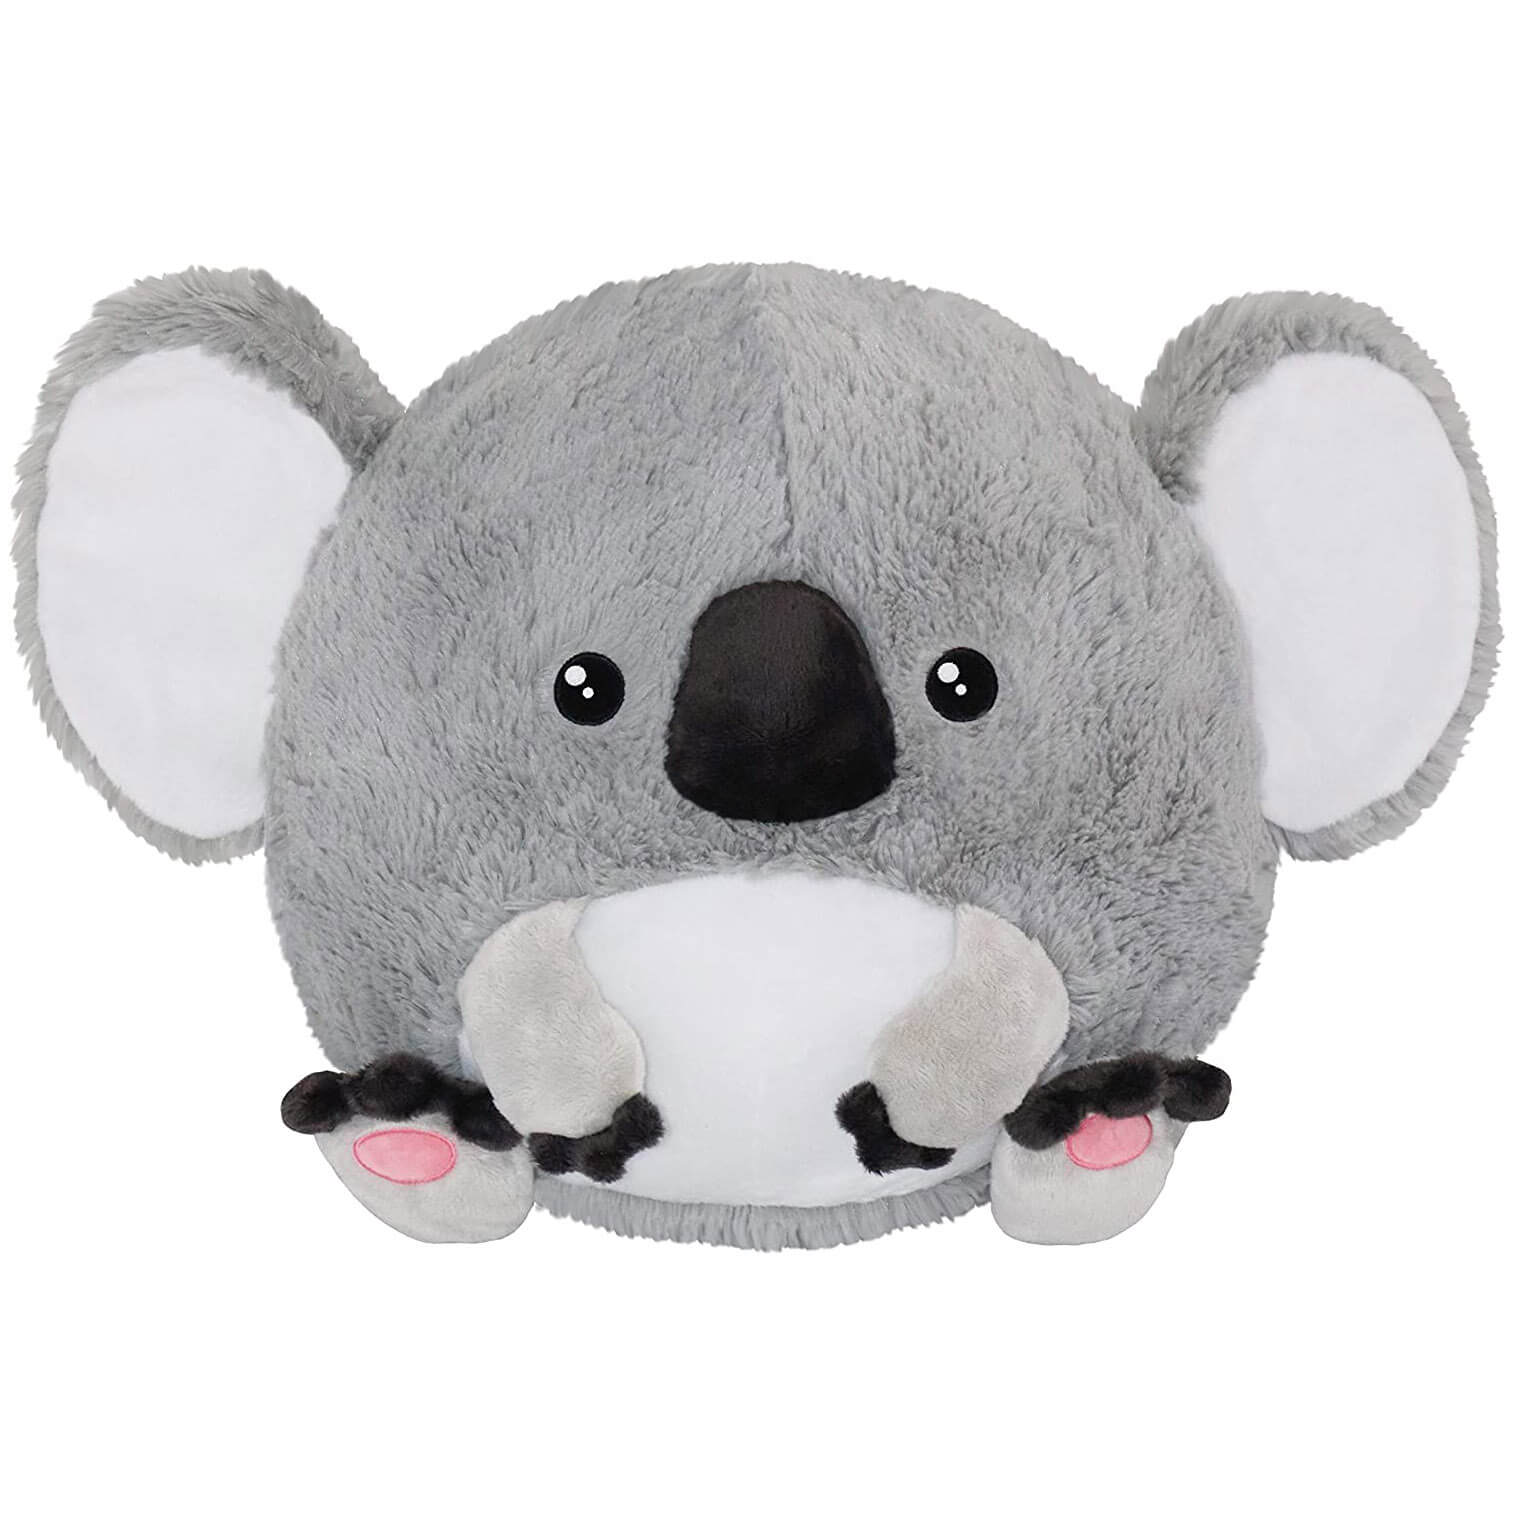 Squishable Baby Koala 15" Plush